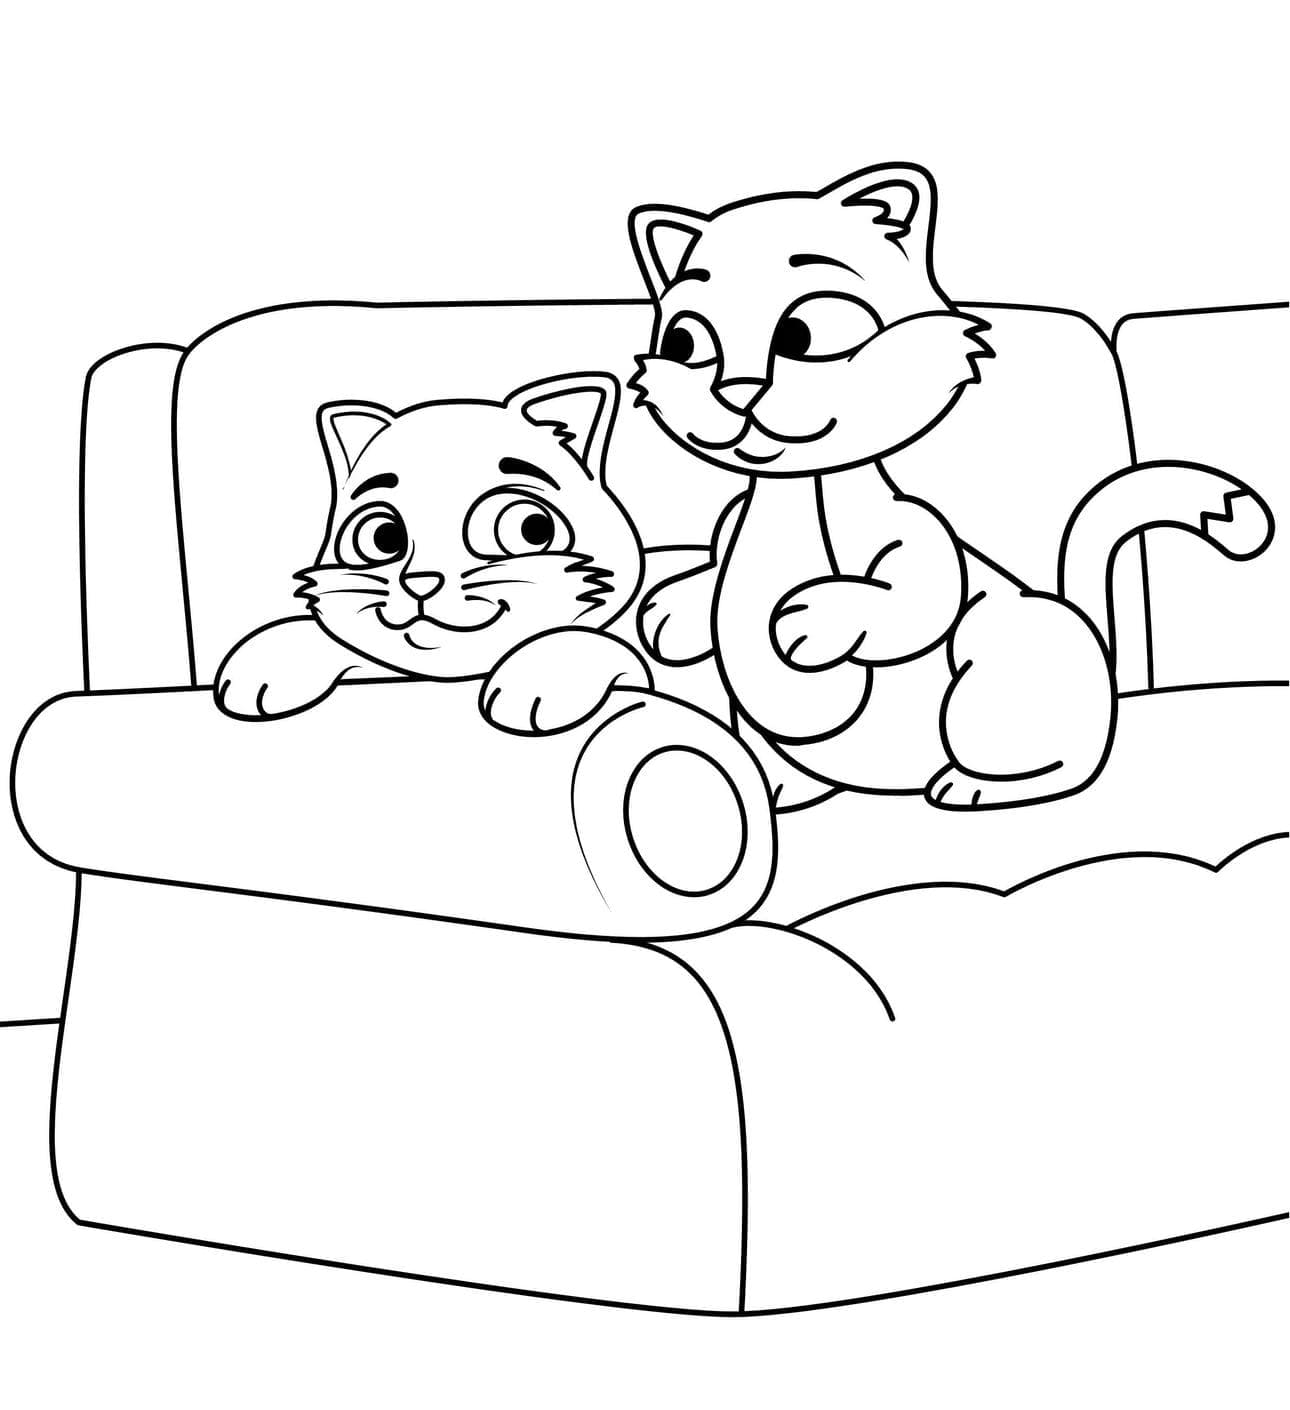 Kattunge På En Sofa fargelegging